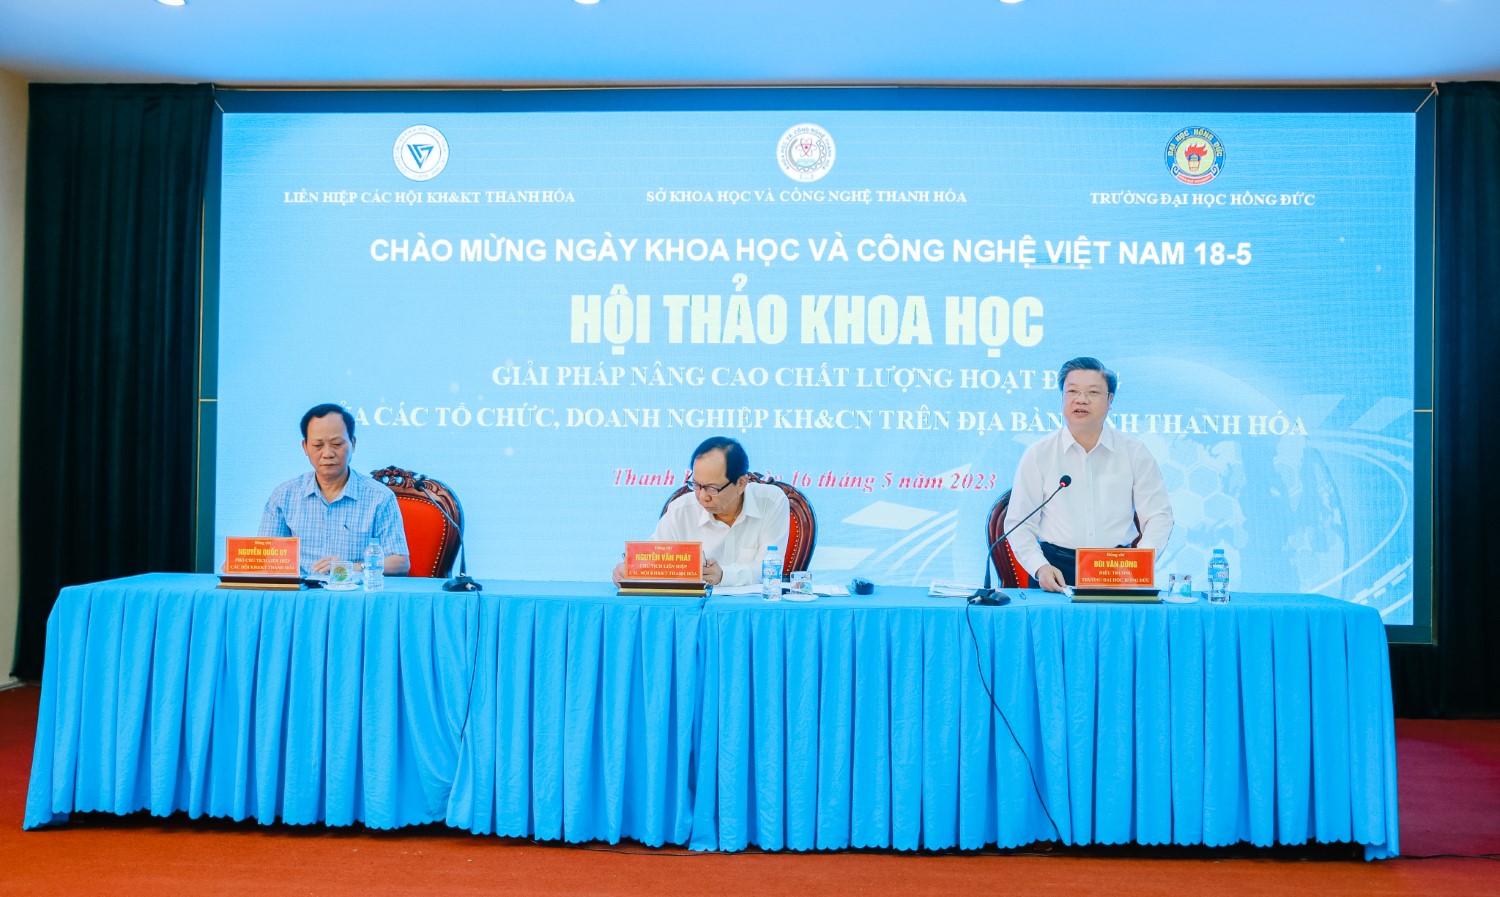 Hội thảo khoa học: “Giải pháp nâng cao chất lượng hoạt động của các tổ chức, doanh nghiệp Khoa học và Công nghệ trên địa bàn tỉnh Thanh Hóa”